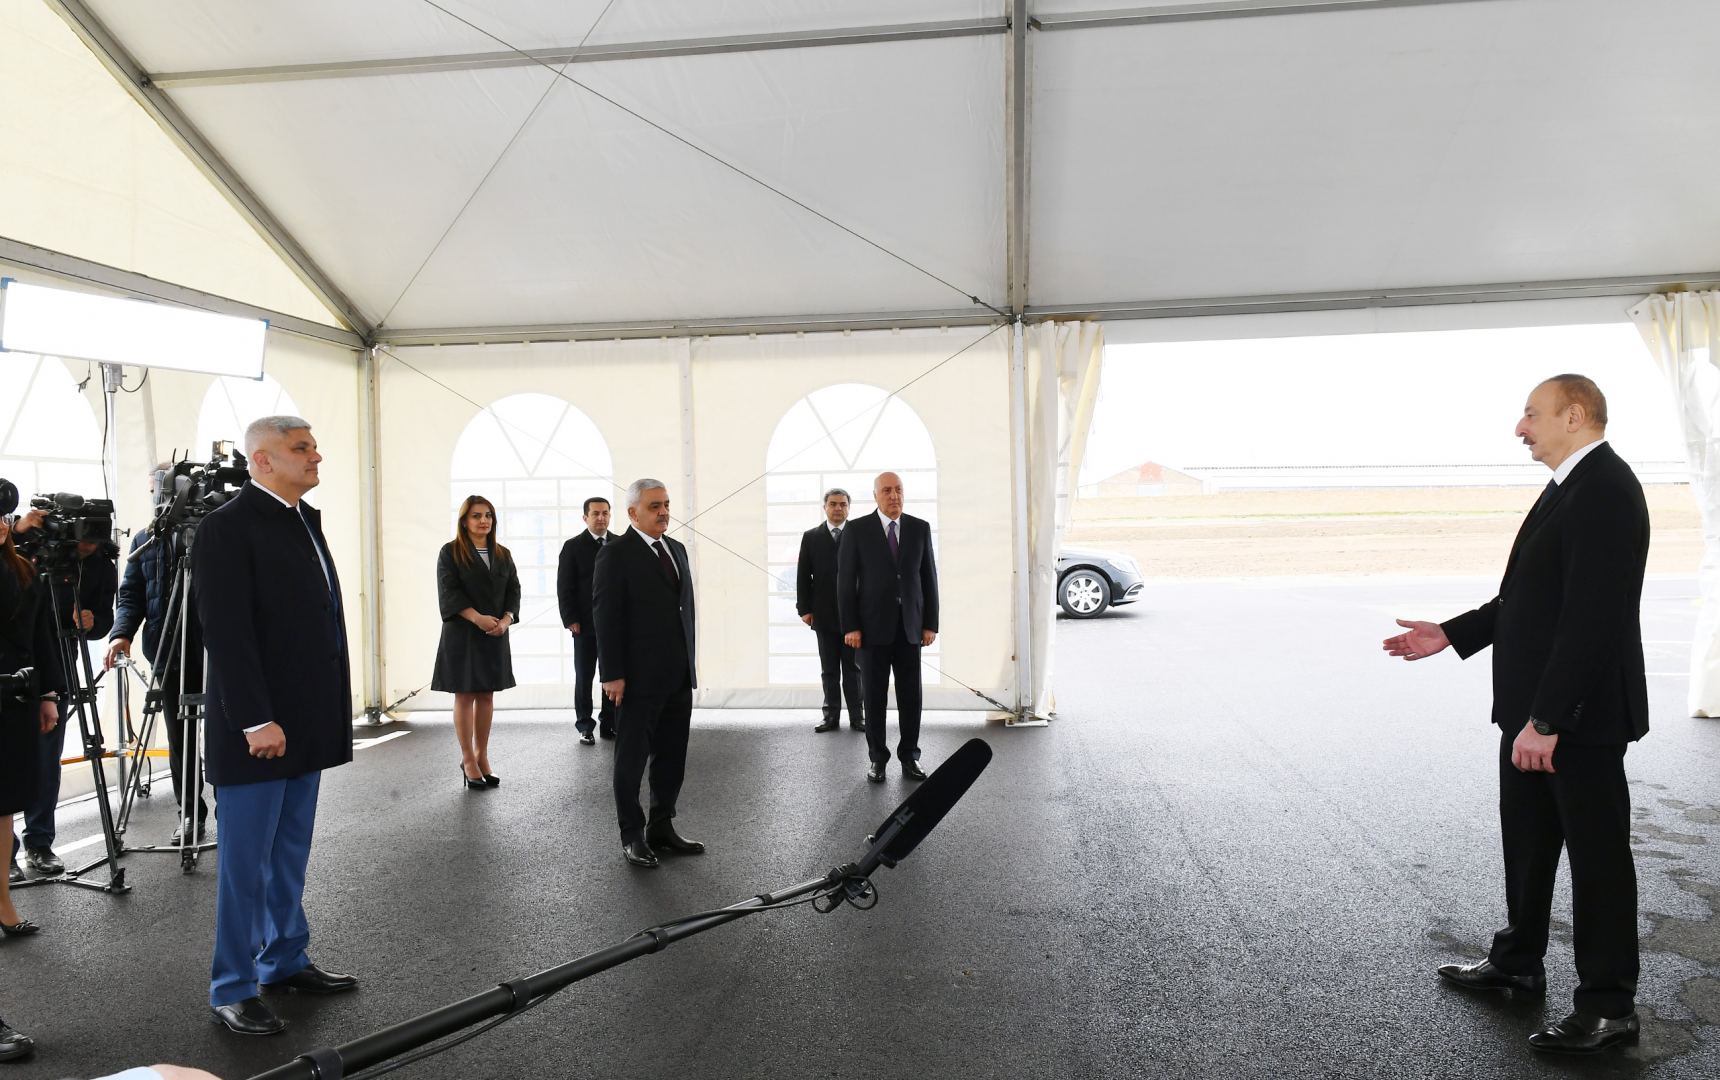 Президент Ильхам Алиев принял участие в открытии магистрального газопровода, проложенного в Сумгайыт (ФОТО/ВИДЕО)